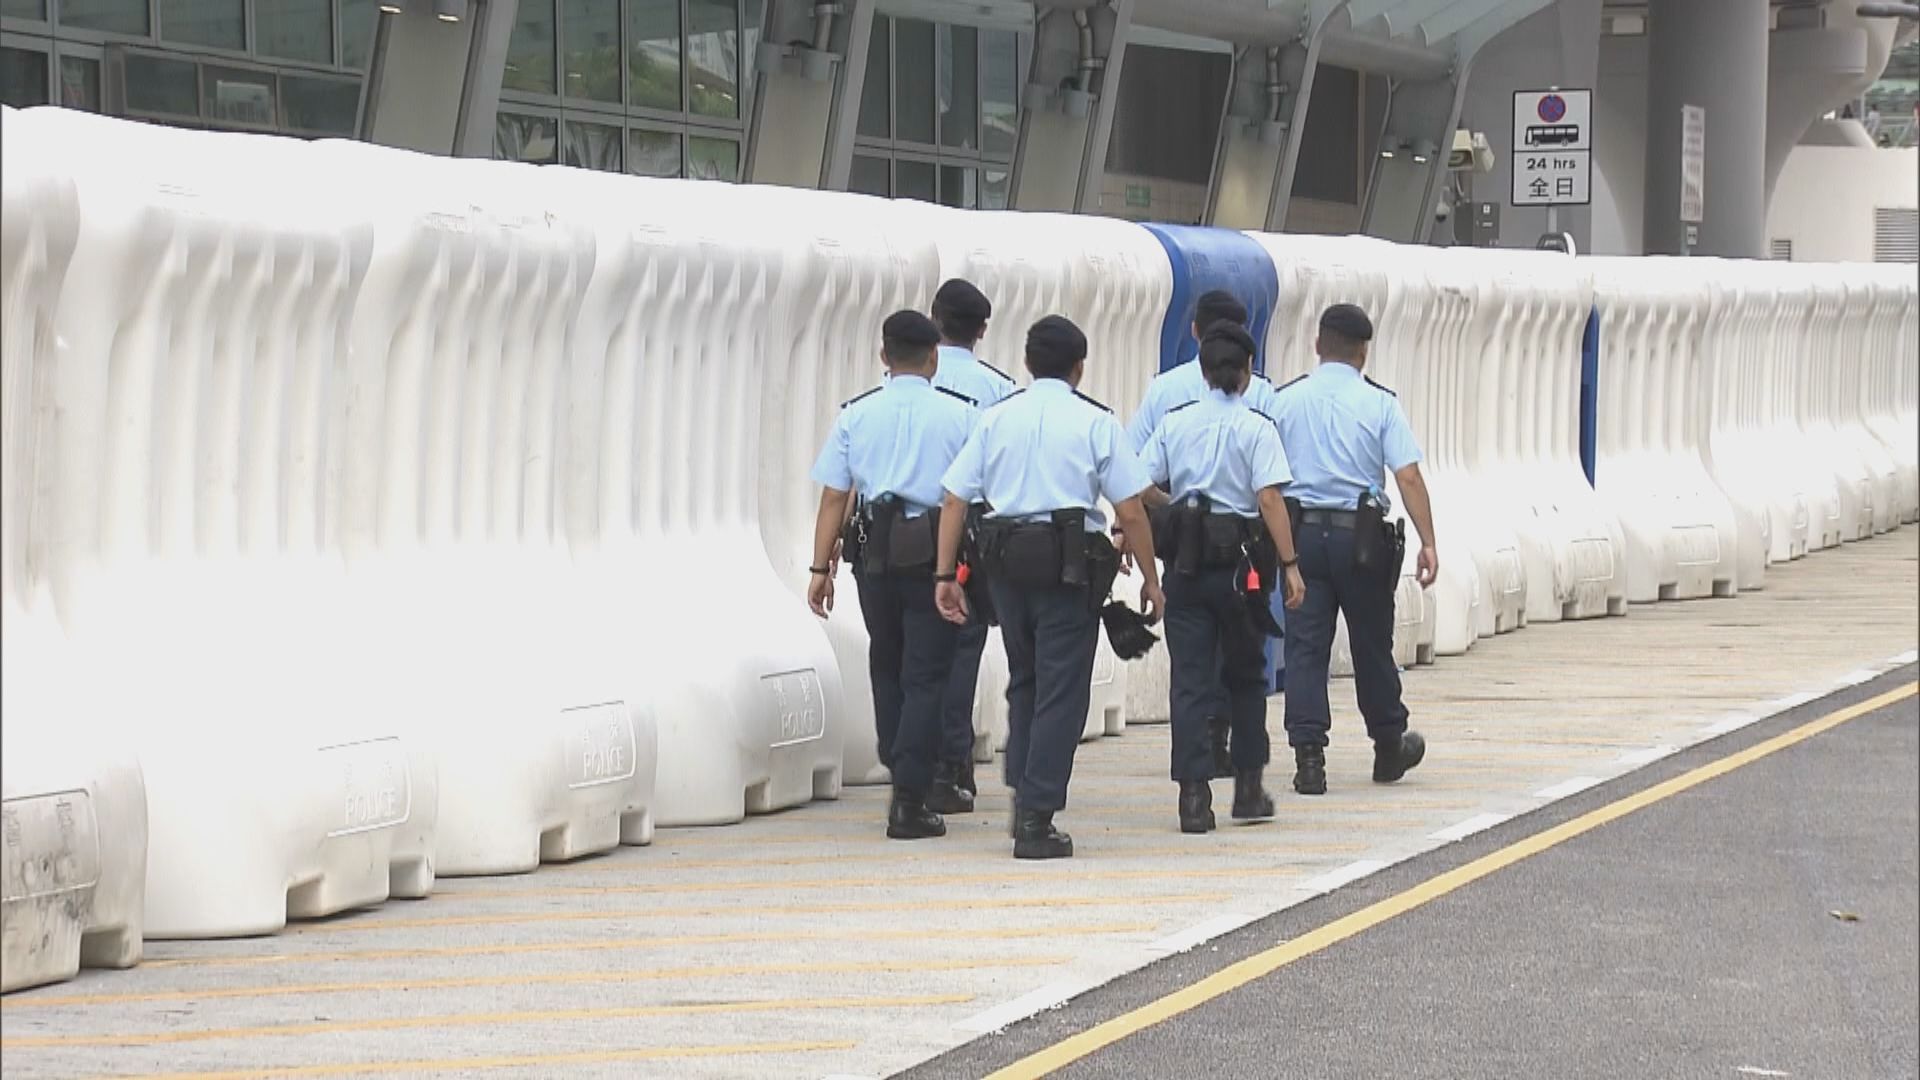 【九龍遊行】警員在西九站外設置水馬布防